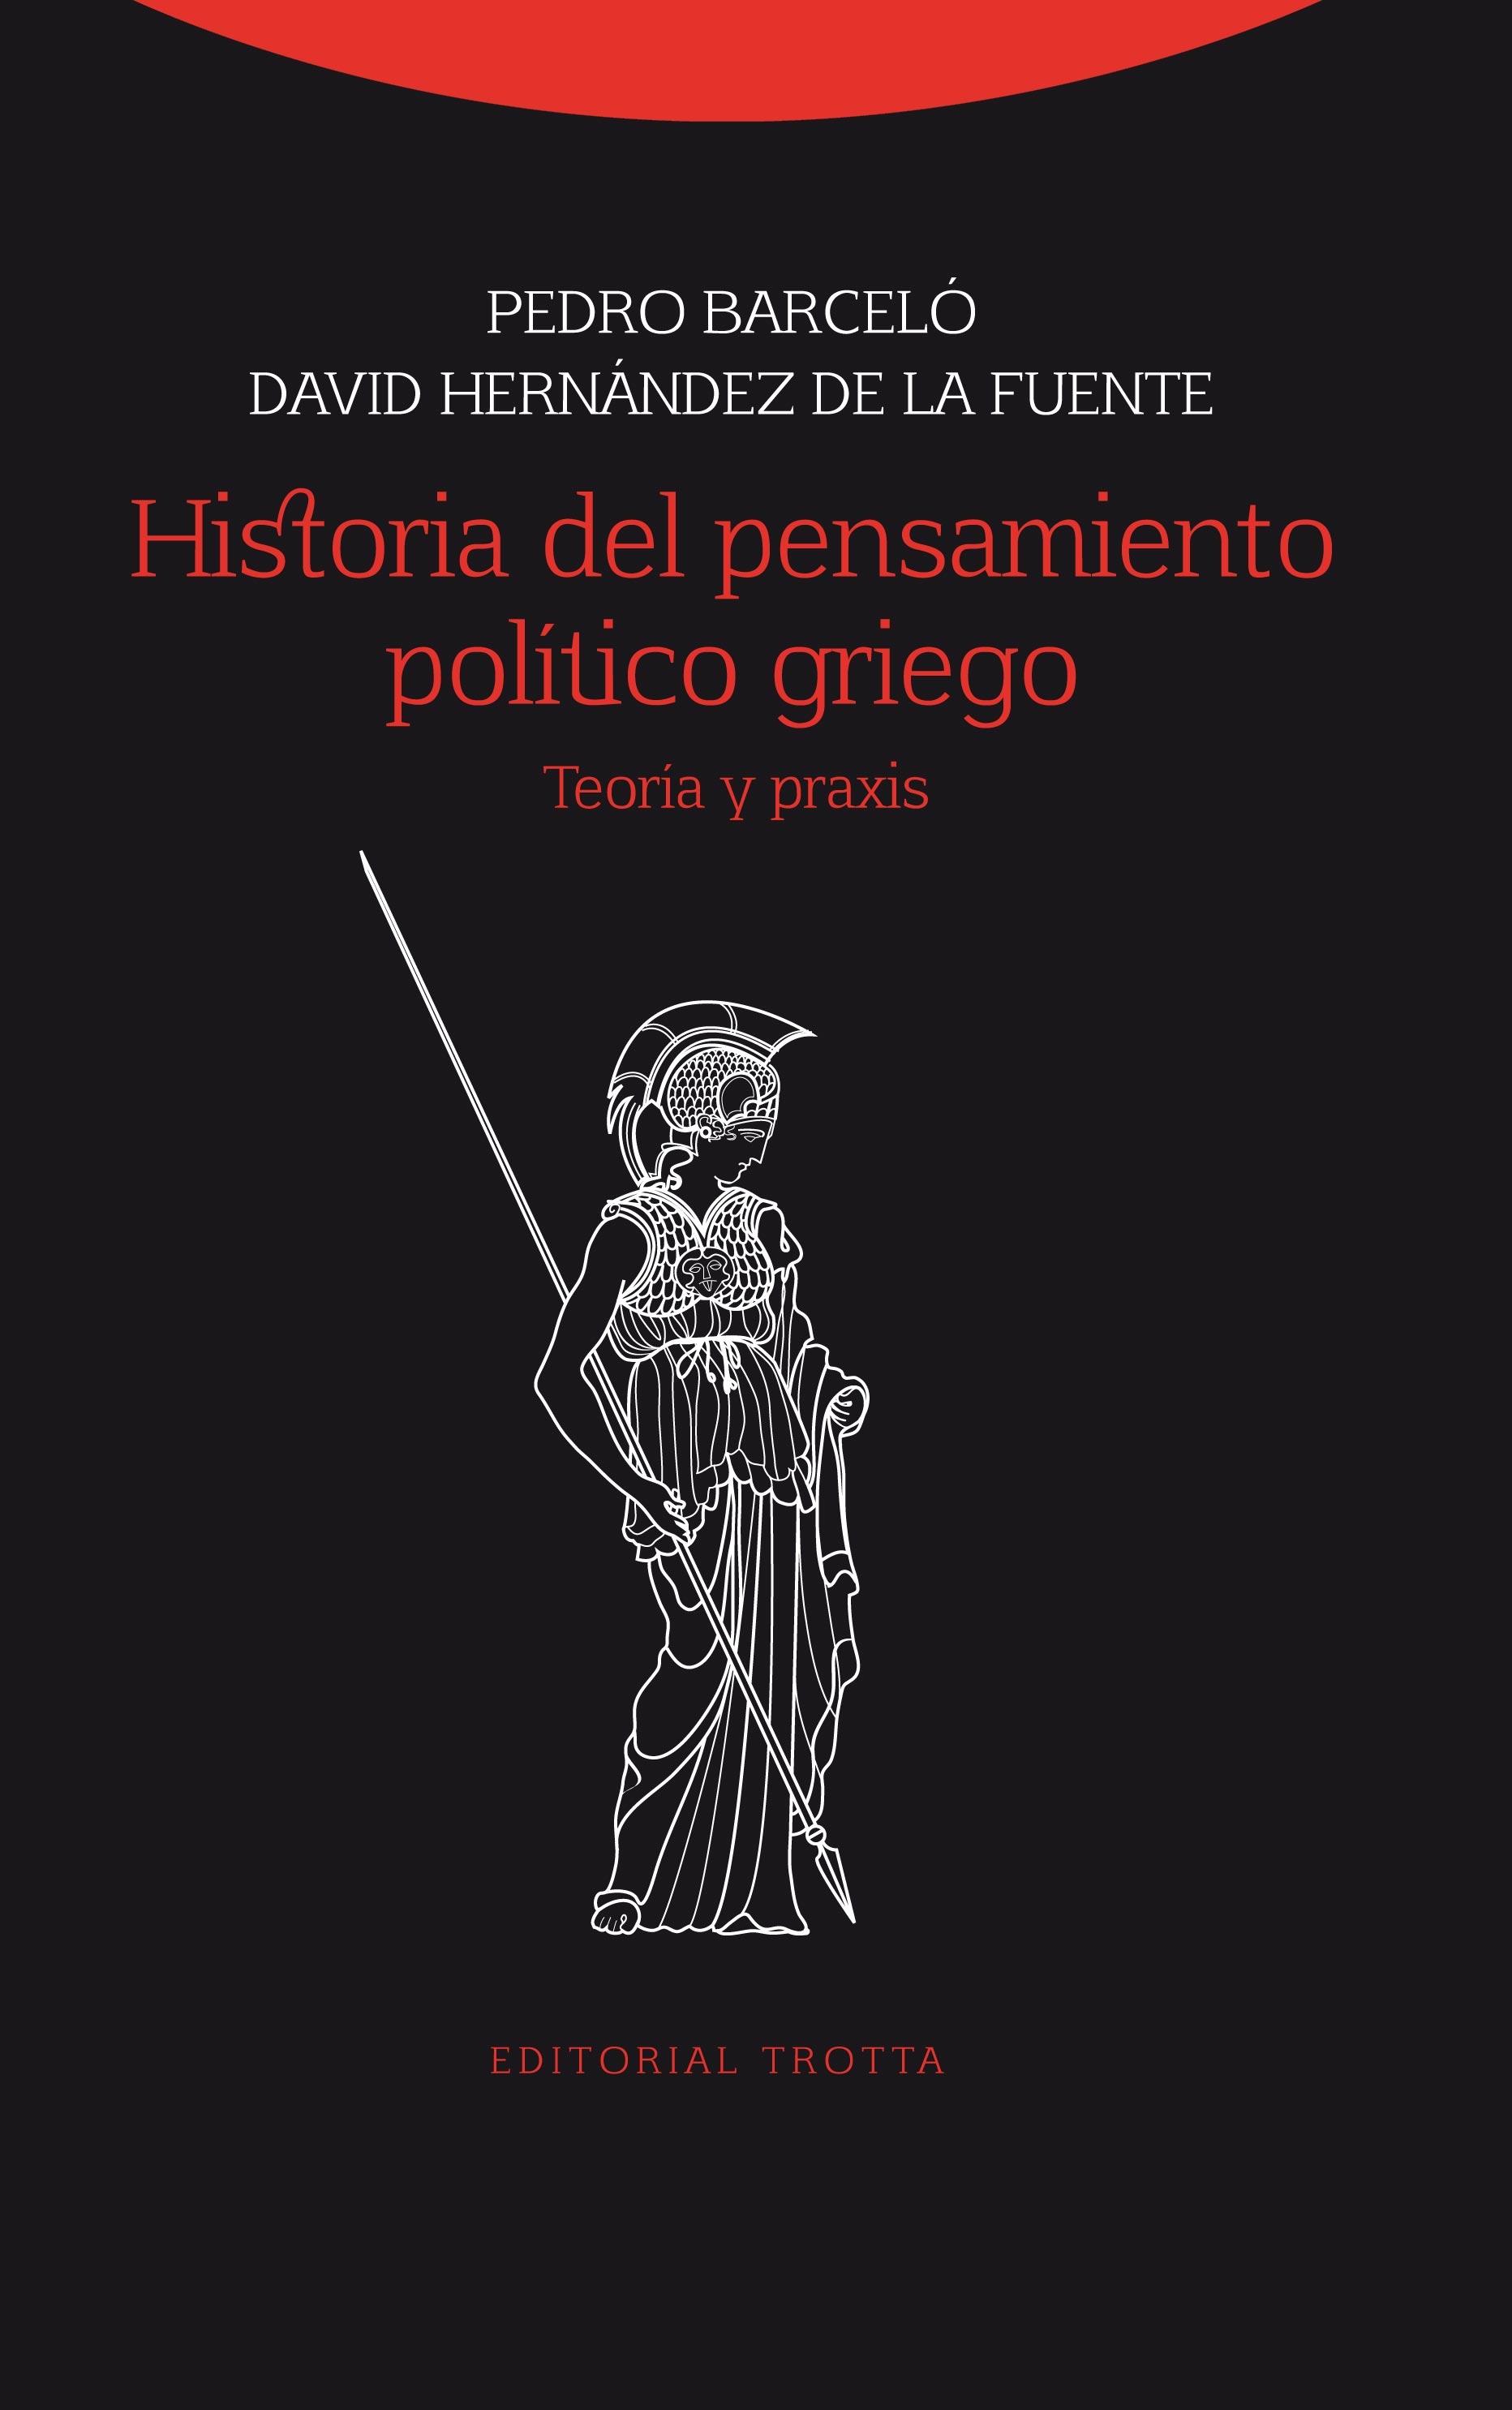 HISTORIA DEL PENSAMIENTO POLITICO GRIEGO "TEORÍA Y PRAXIS"